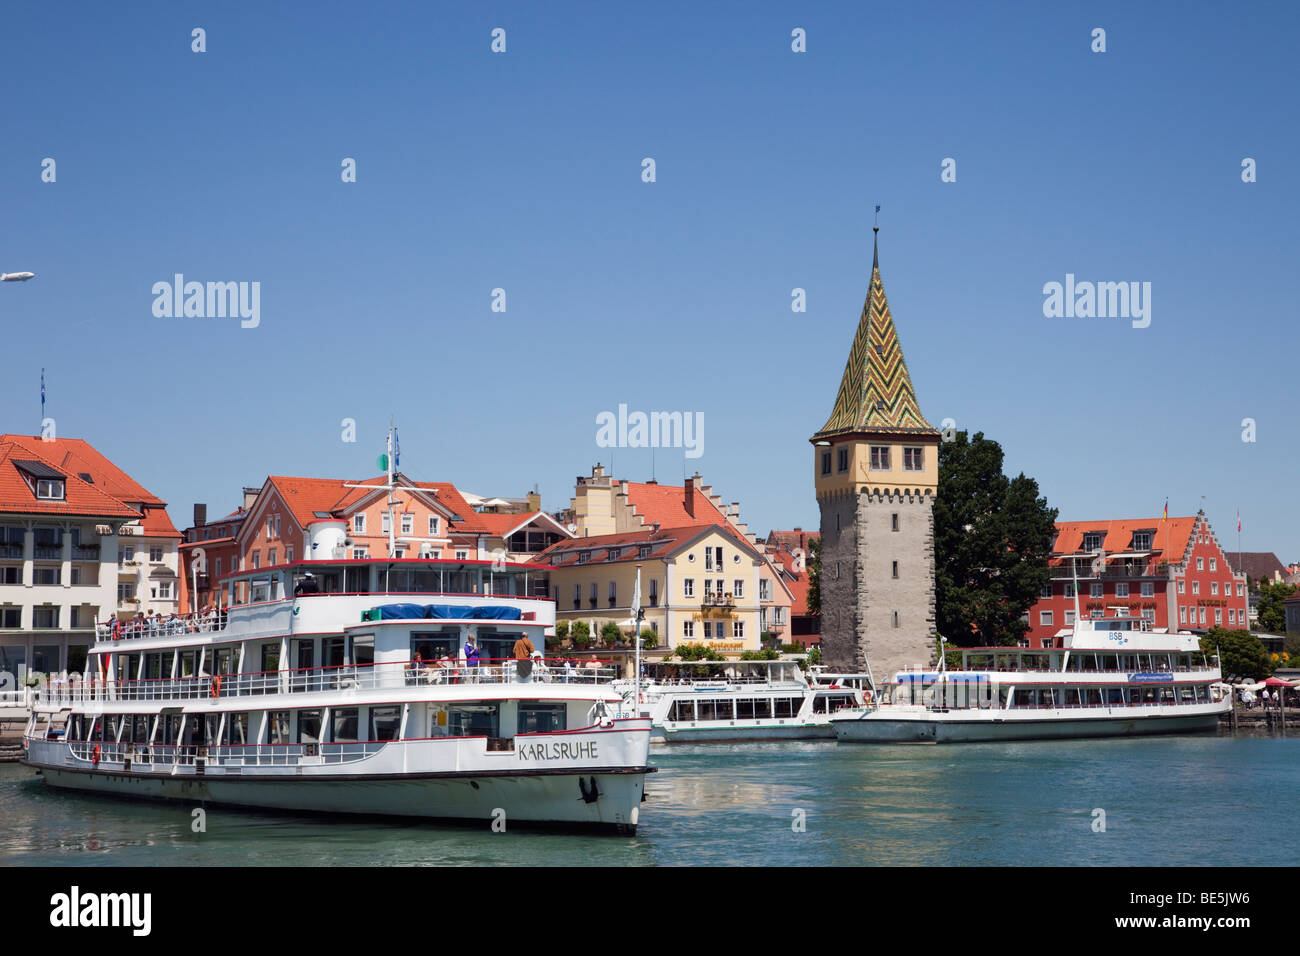 Fähre, Hafen mit mangturm Turm und malerischen Uferpromenade am Bodensee (Bodensee). Lindau, Bayern, Deutschland Stockfoto